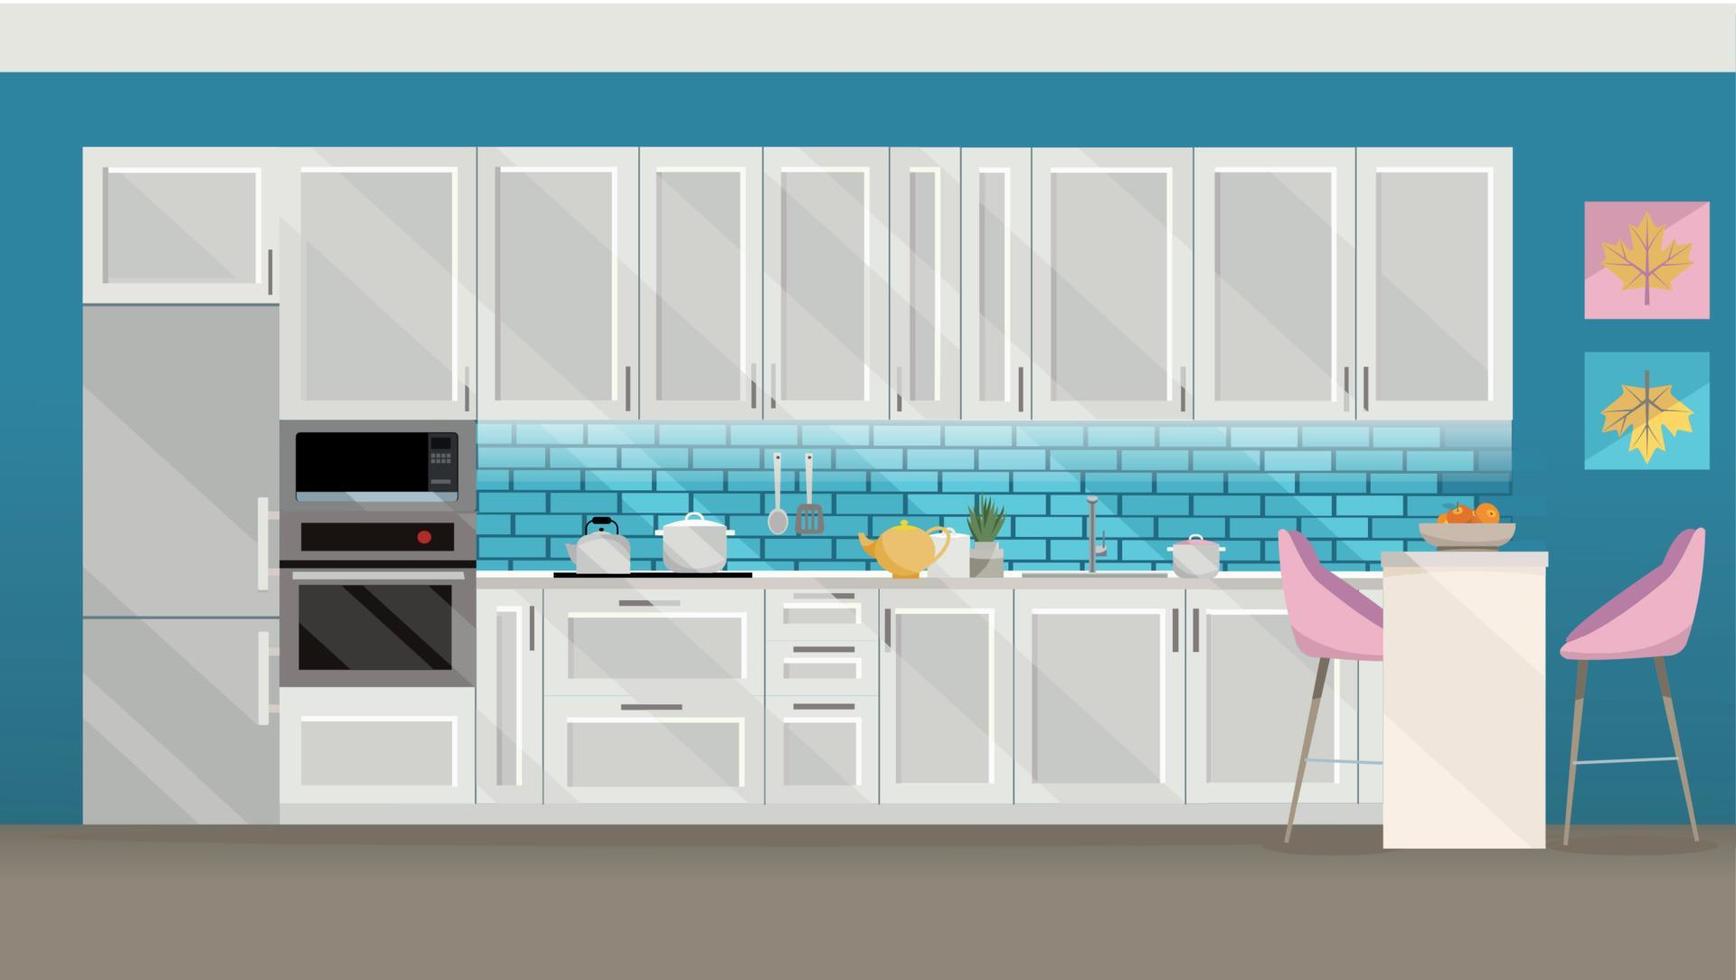 flache illustration weiße küche auf blauem hintergrund mit küchenzubehör-kühlschrank, ofen, mikrowelle. Esstisch mit 4 Stühlen am Fenster mit transparenten Vorhängen, Tee, Teekanne. flacher Cartoon-Vektor. vektor